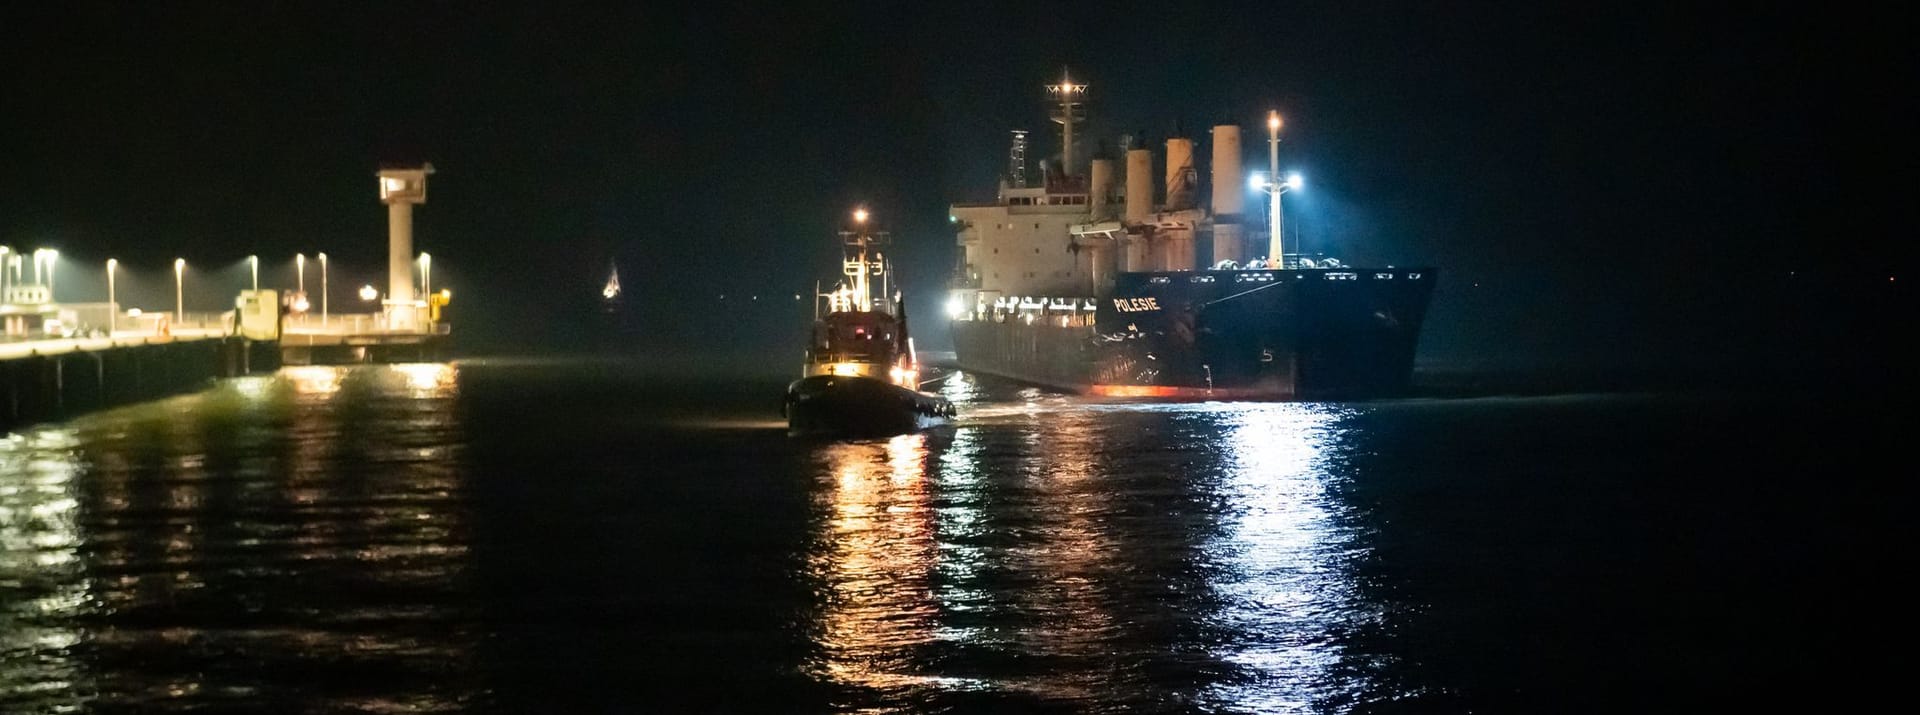 Cuxhaven: Das Frachtschiff «Polesie» wird in der Nacht von zwei Schleppern an den Kai der Seebäderbrücke gezogen.